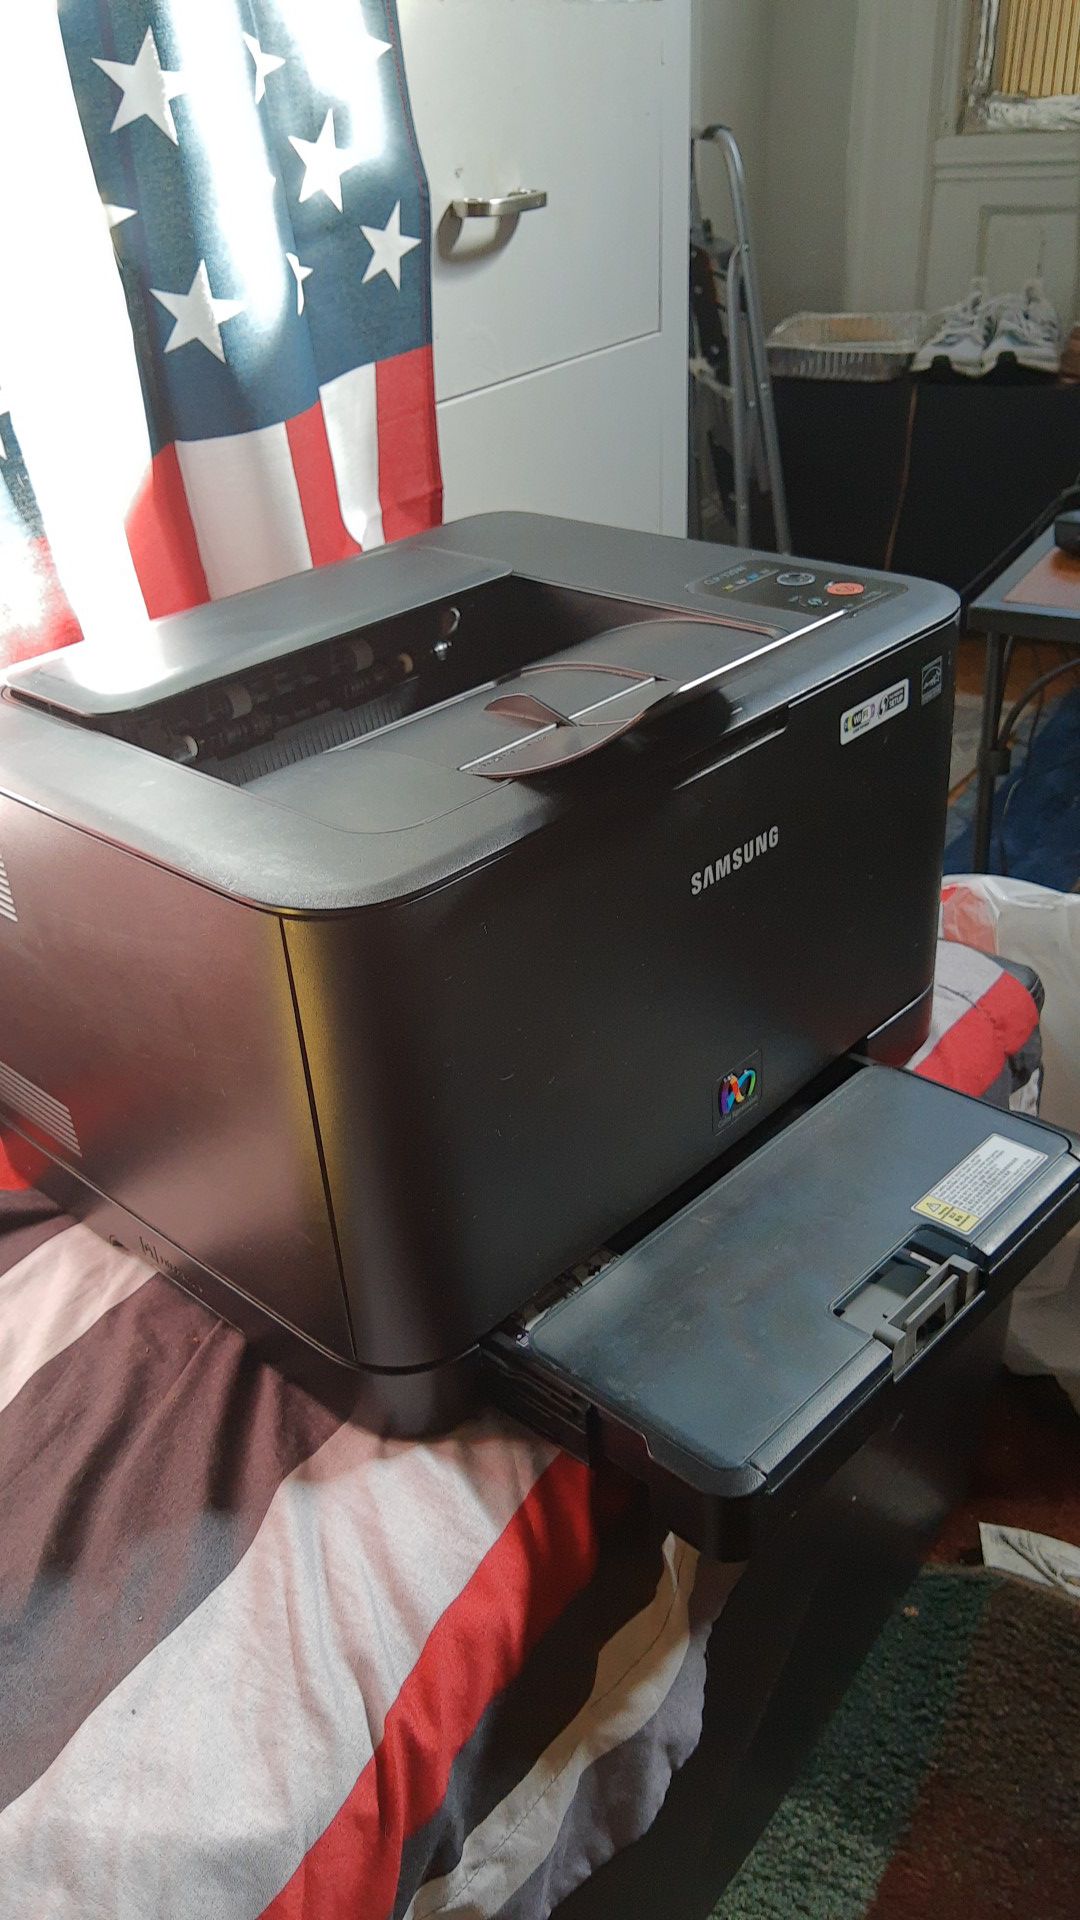 Samsung CLP-325W Printer